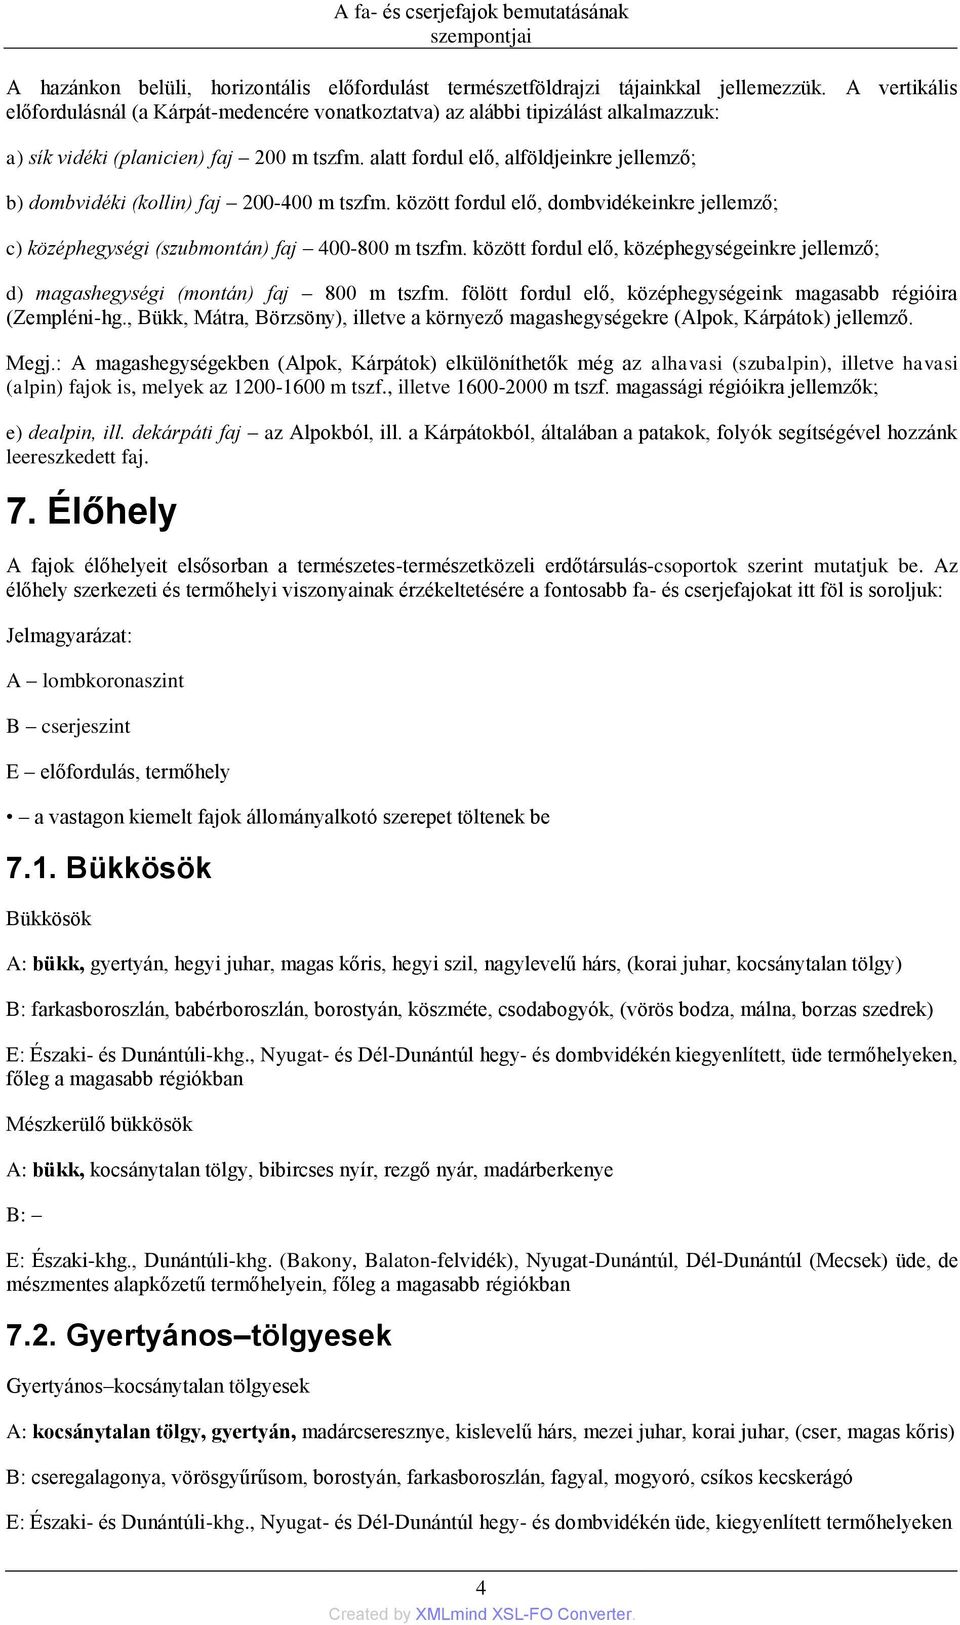 Magyarország fa- és cserjefajai dr. Bartha, Dénes - PDF Free Download